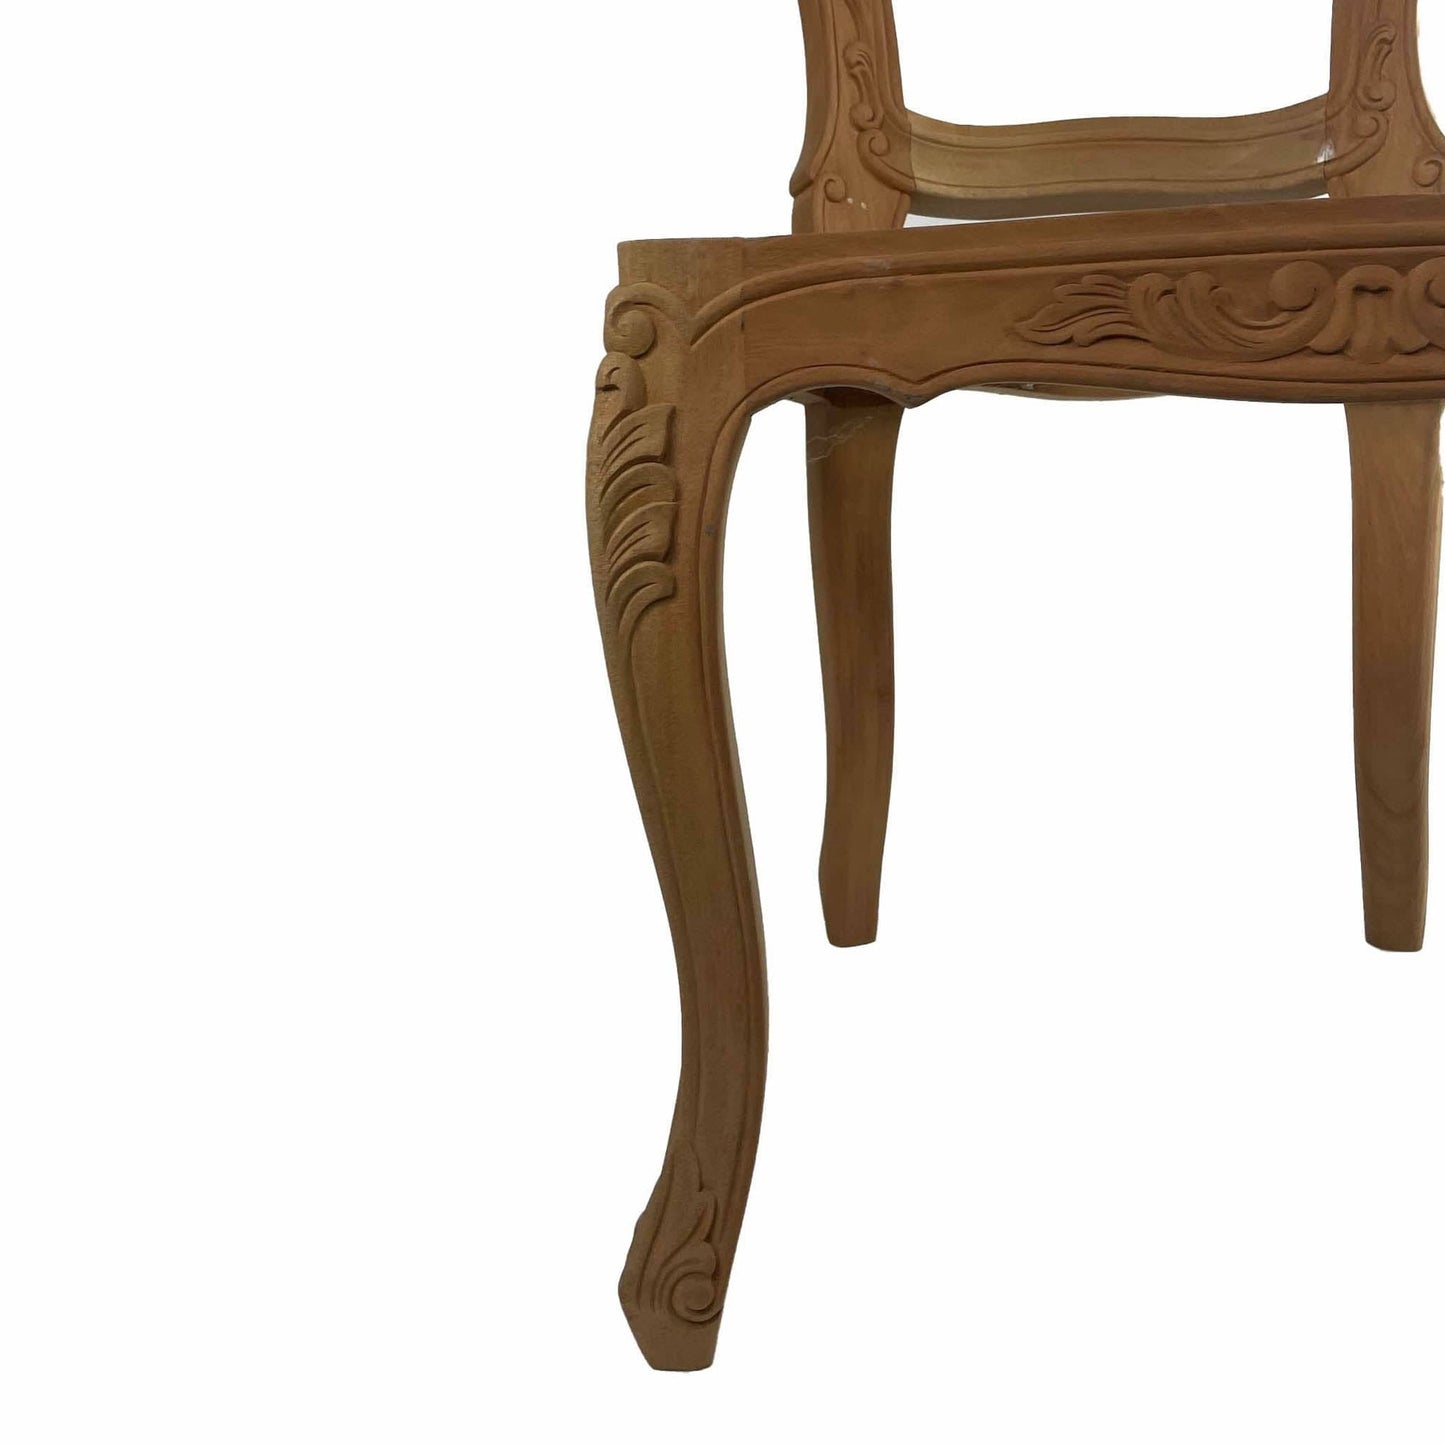 Franciscan Mahogany Chair Frame